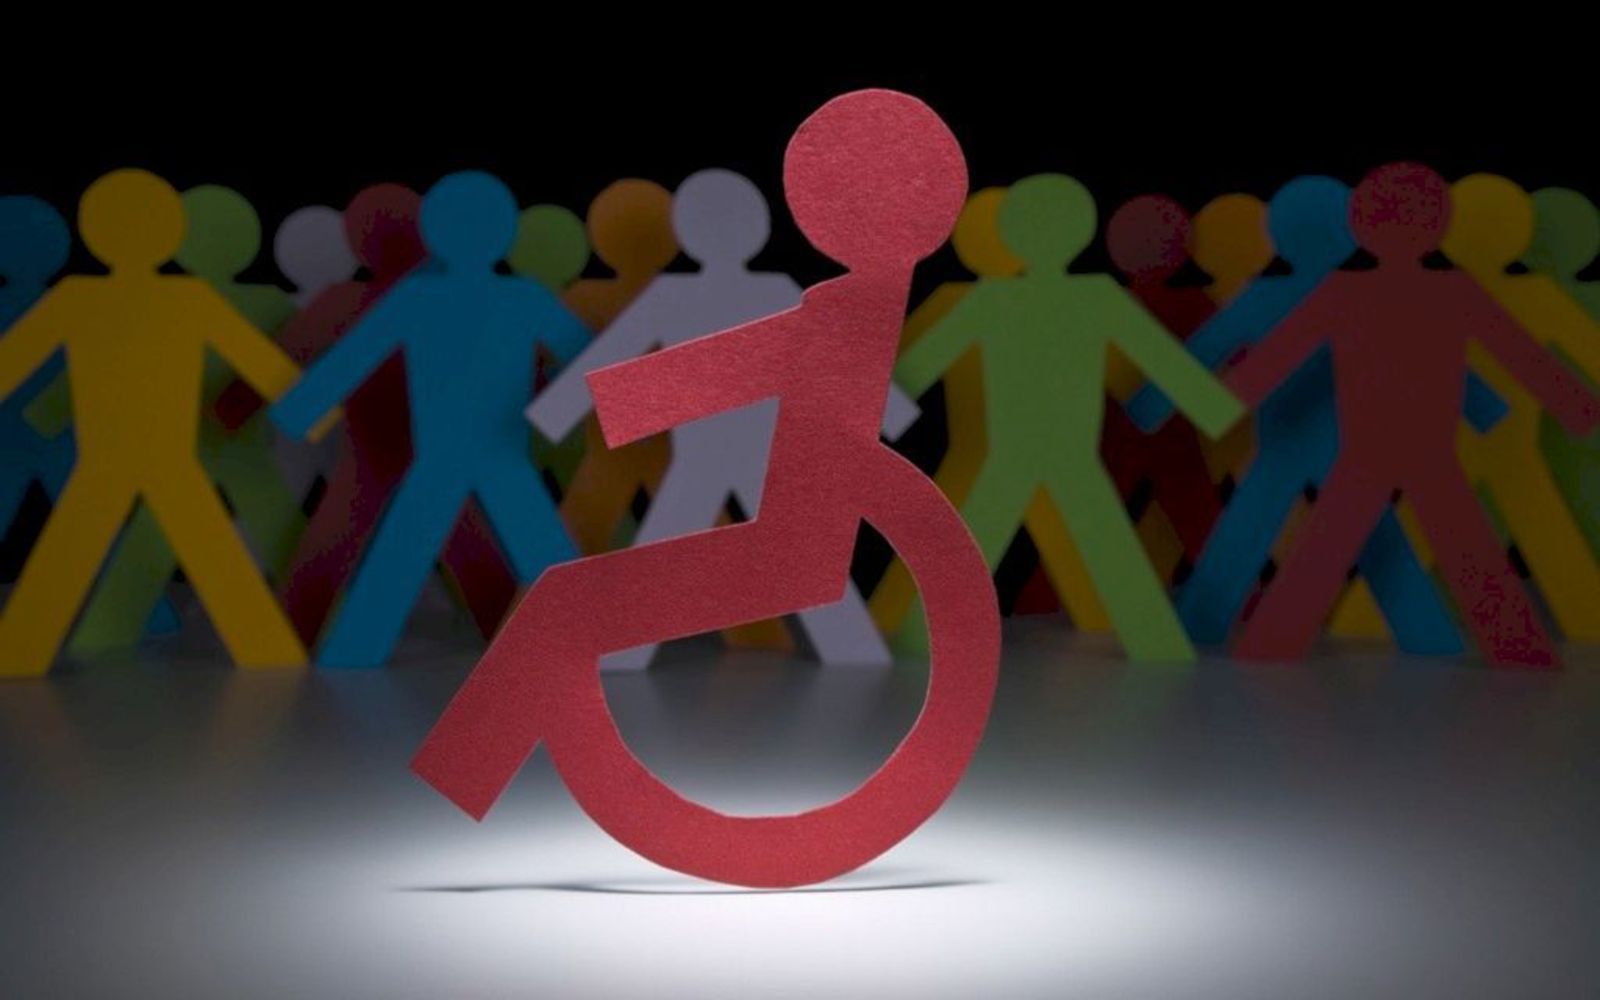 Censimento per persone in condizione di disabilità grave ai sensi dell’art. 3. comma 3. della legge 104/1992.